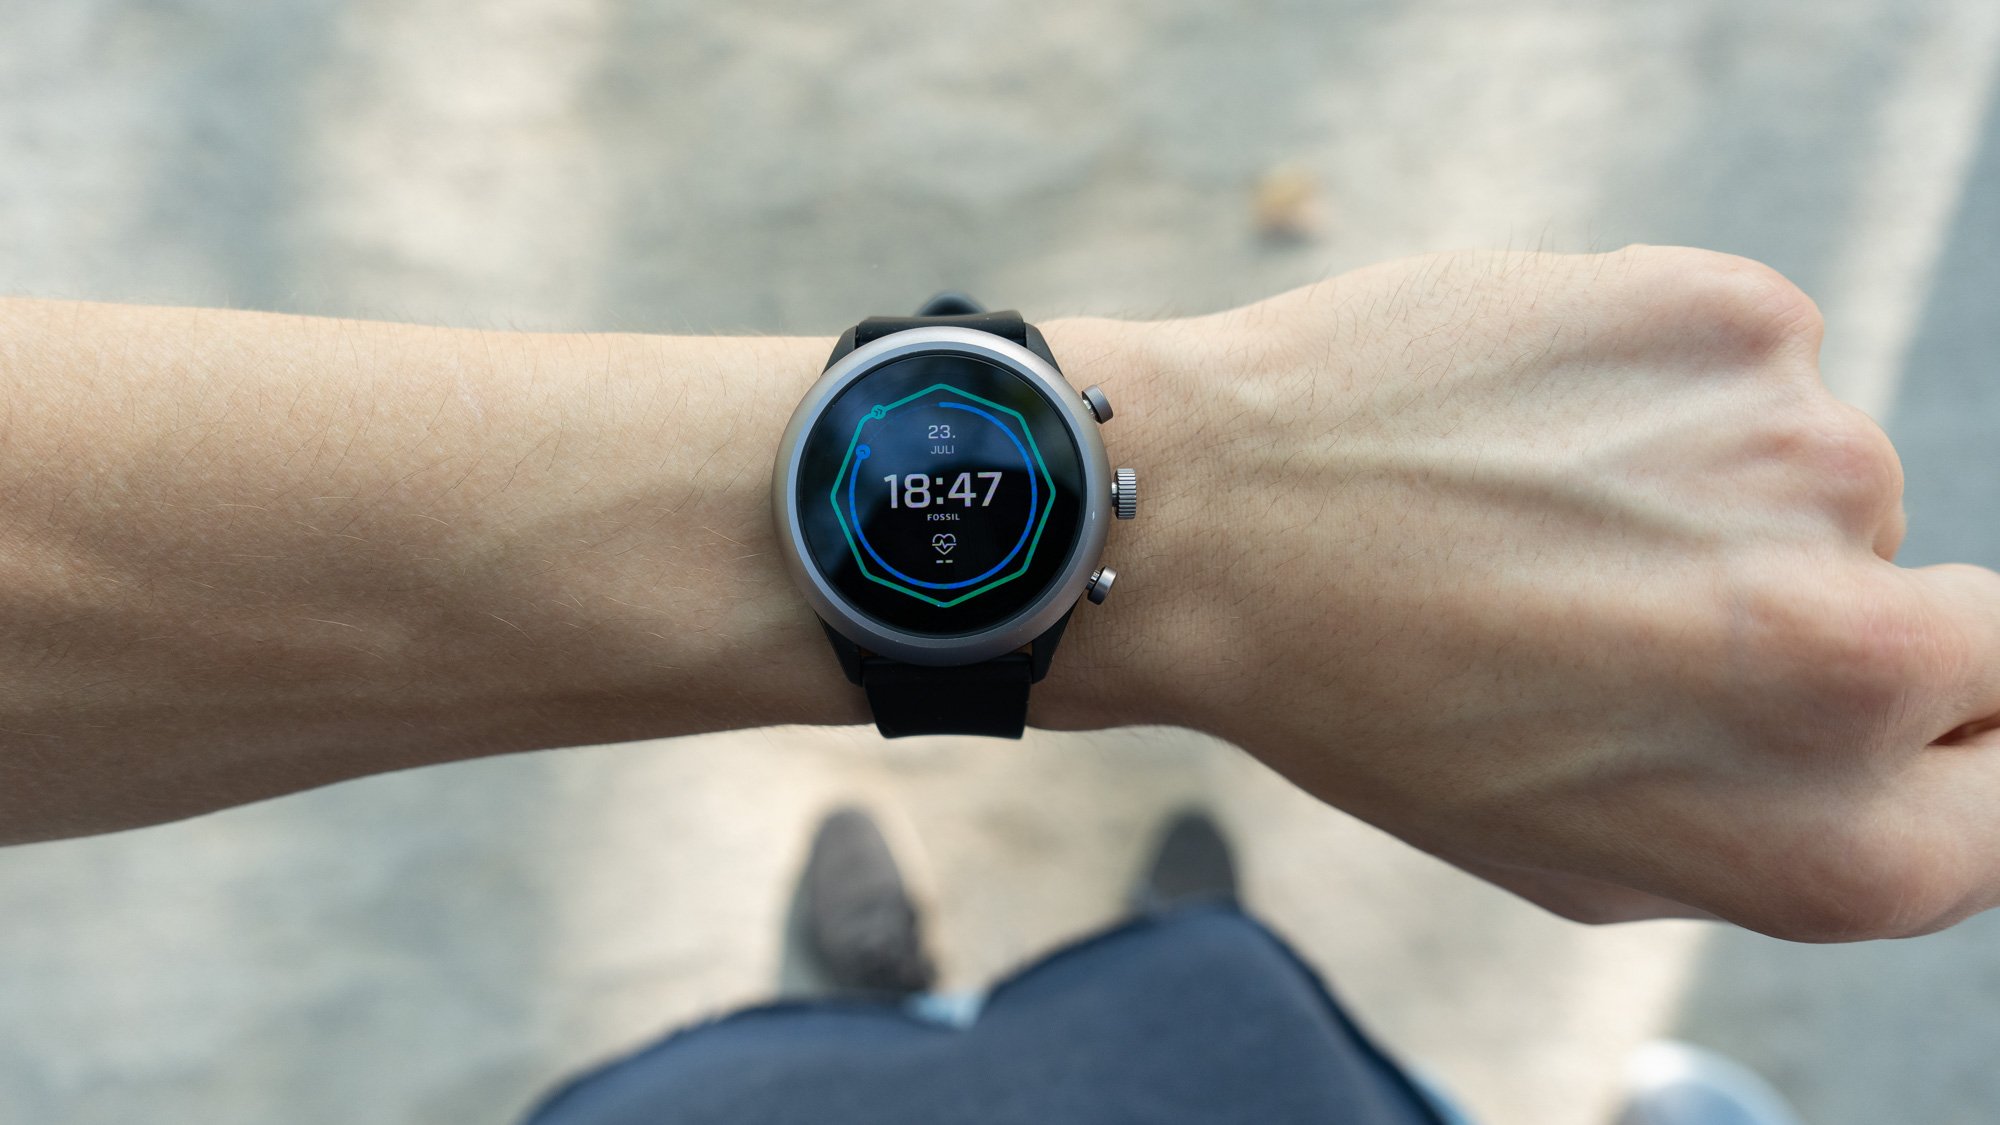 Die Smartwatch sitzt gut auf dem Arm und macht einen schicken Eindruck.